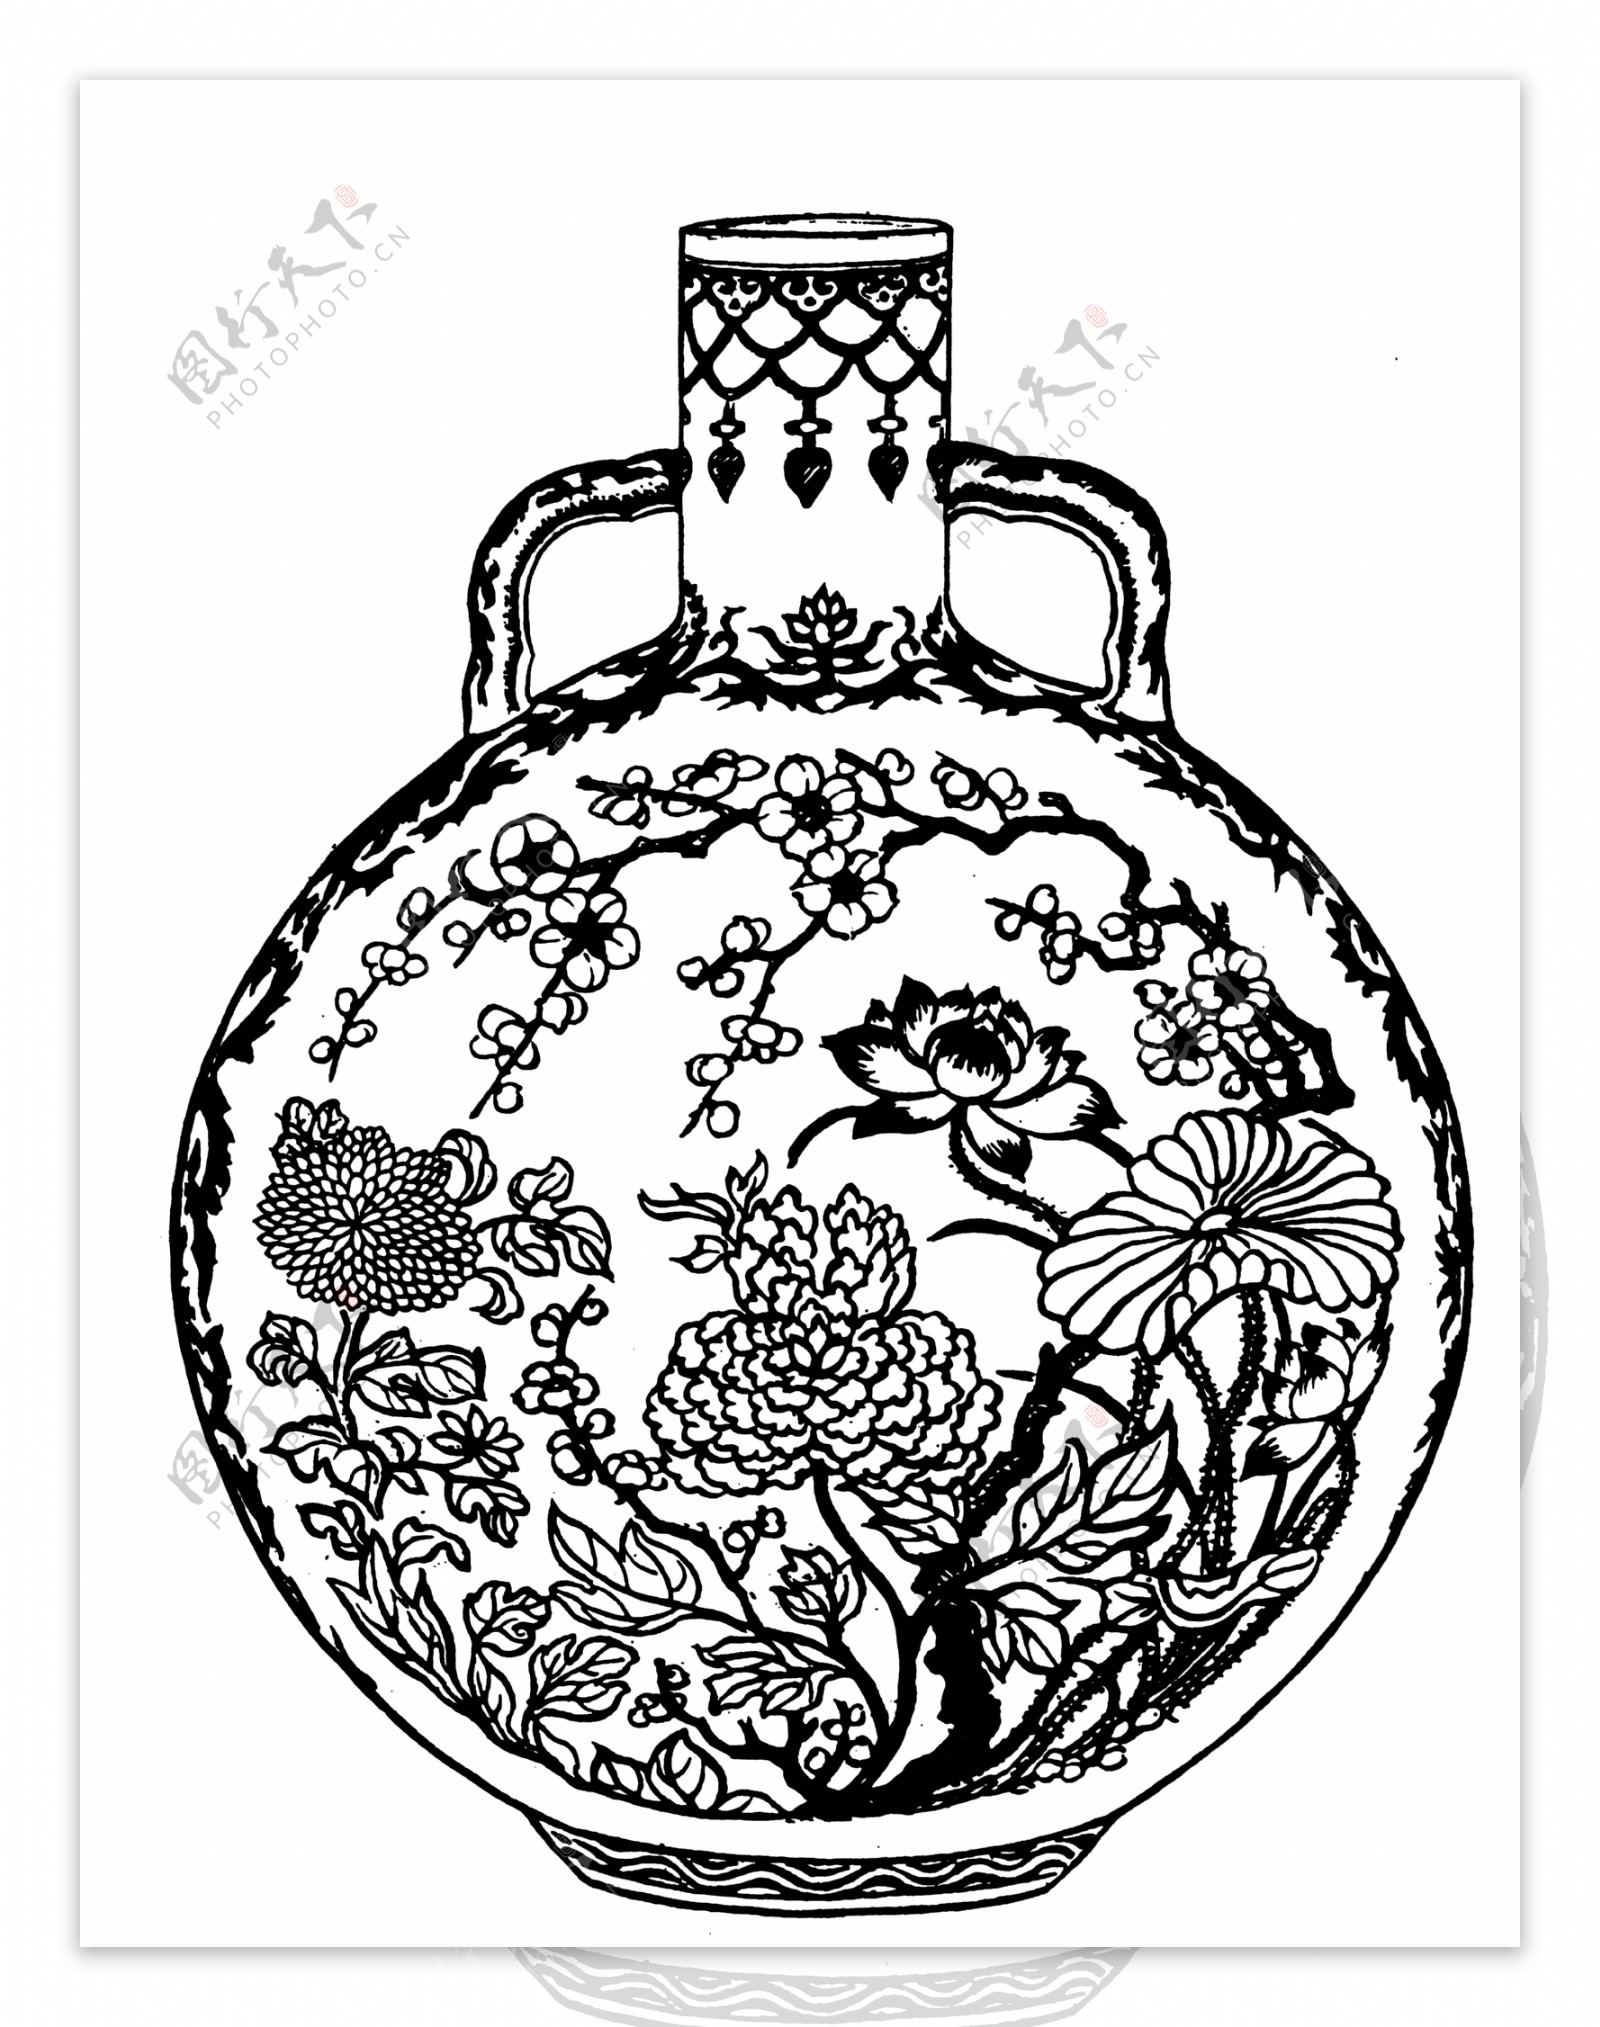 器物图案清代图案中国传统图案81